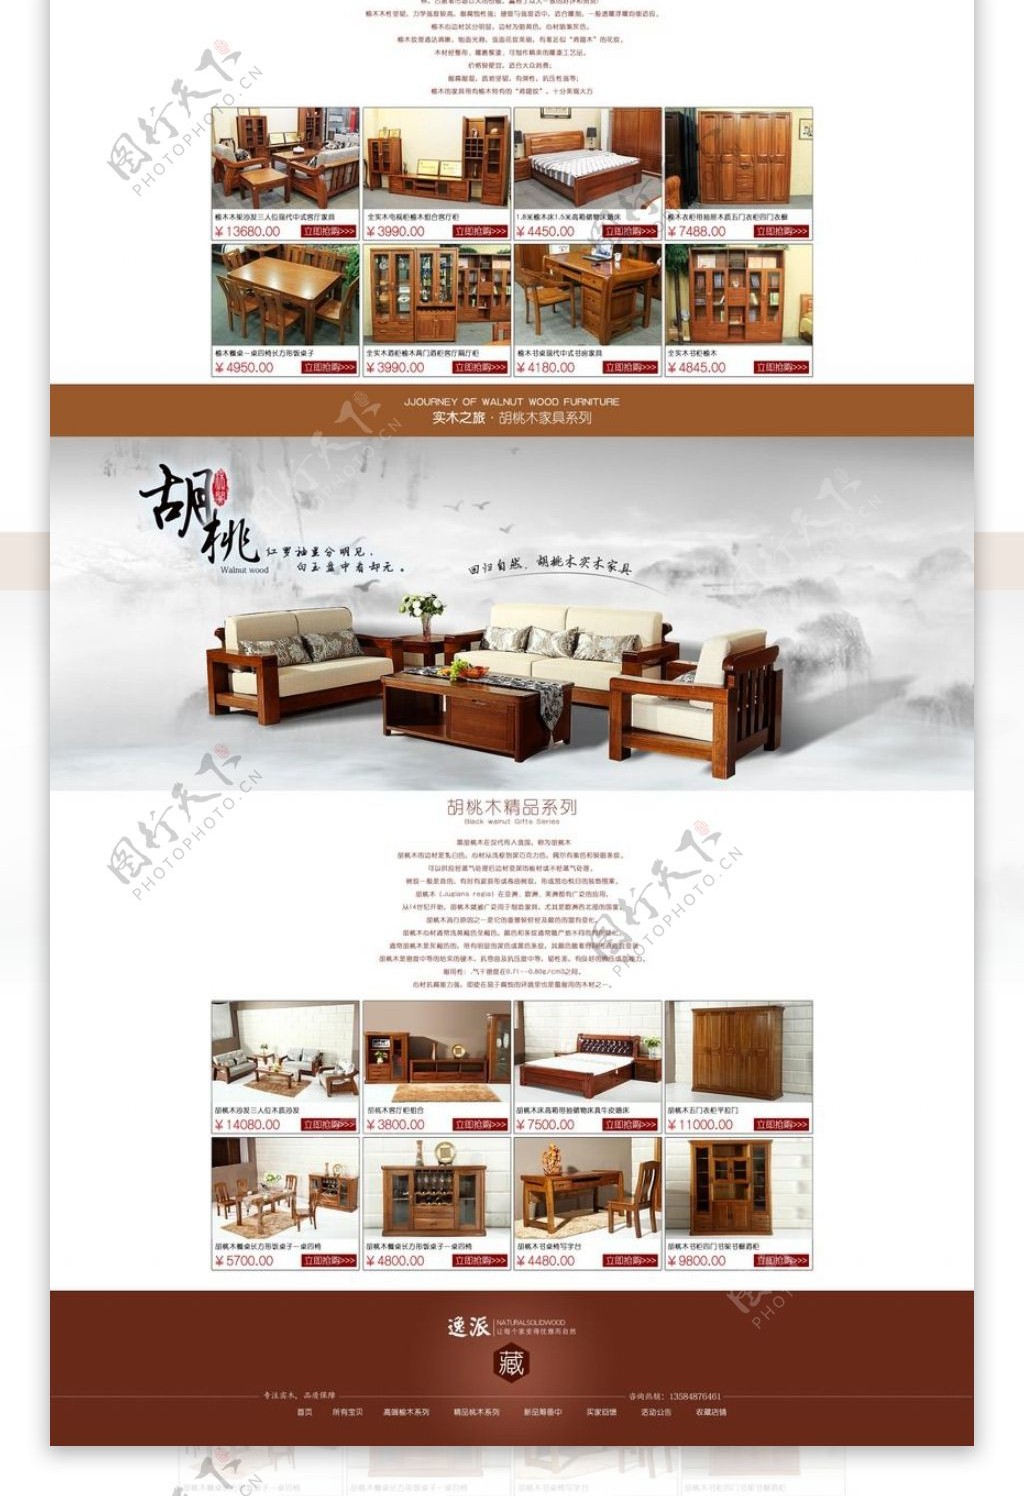 淘宝实木沙发促销页面设计PSD素材